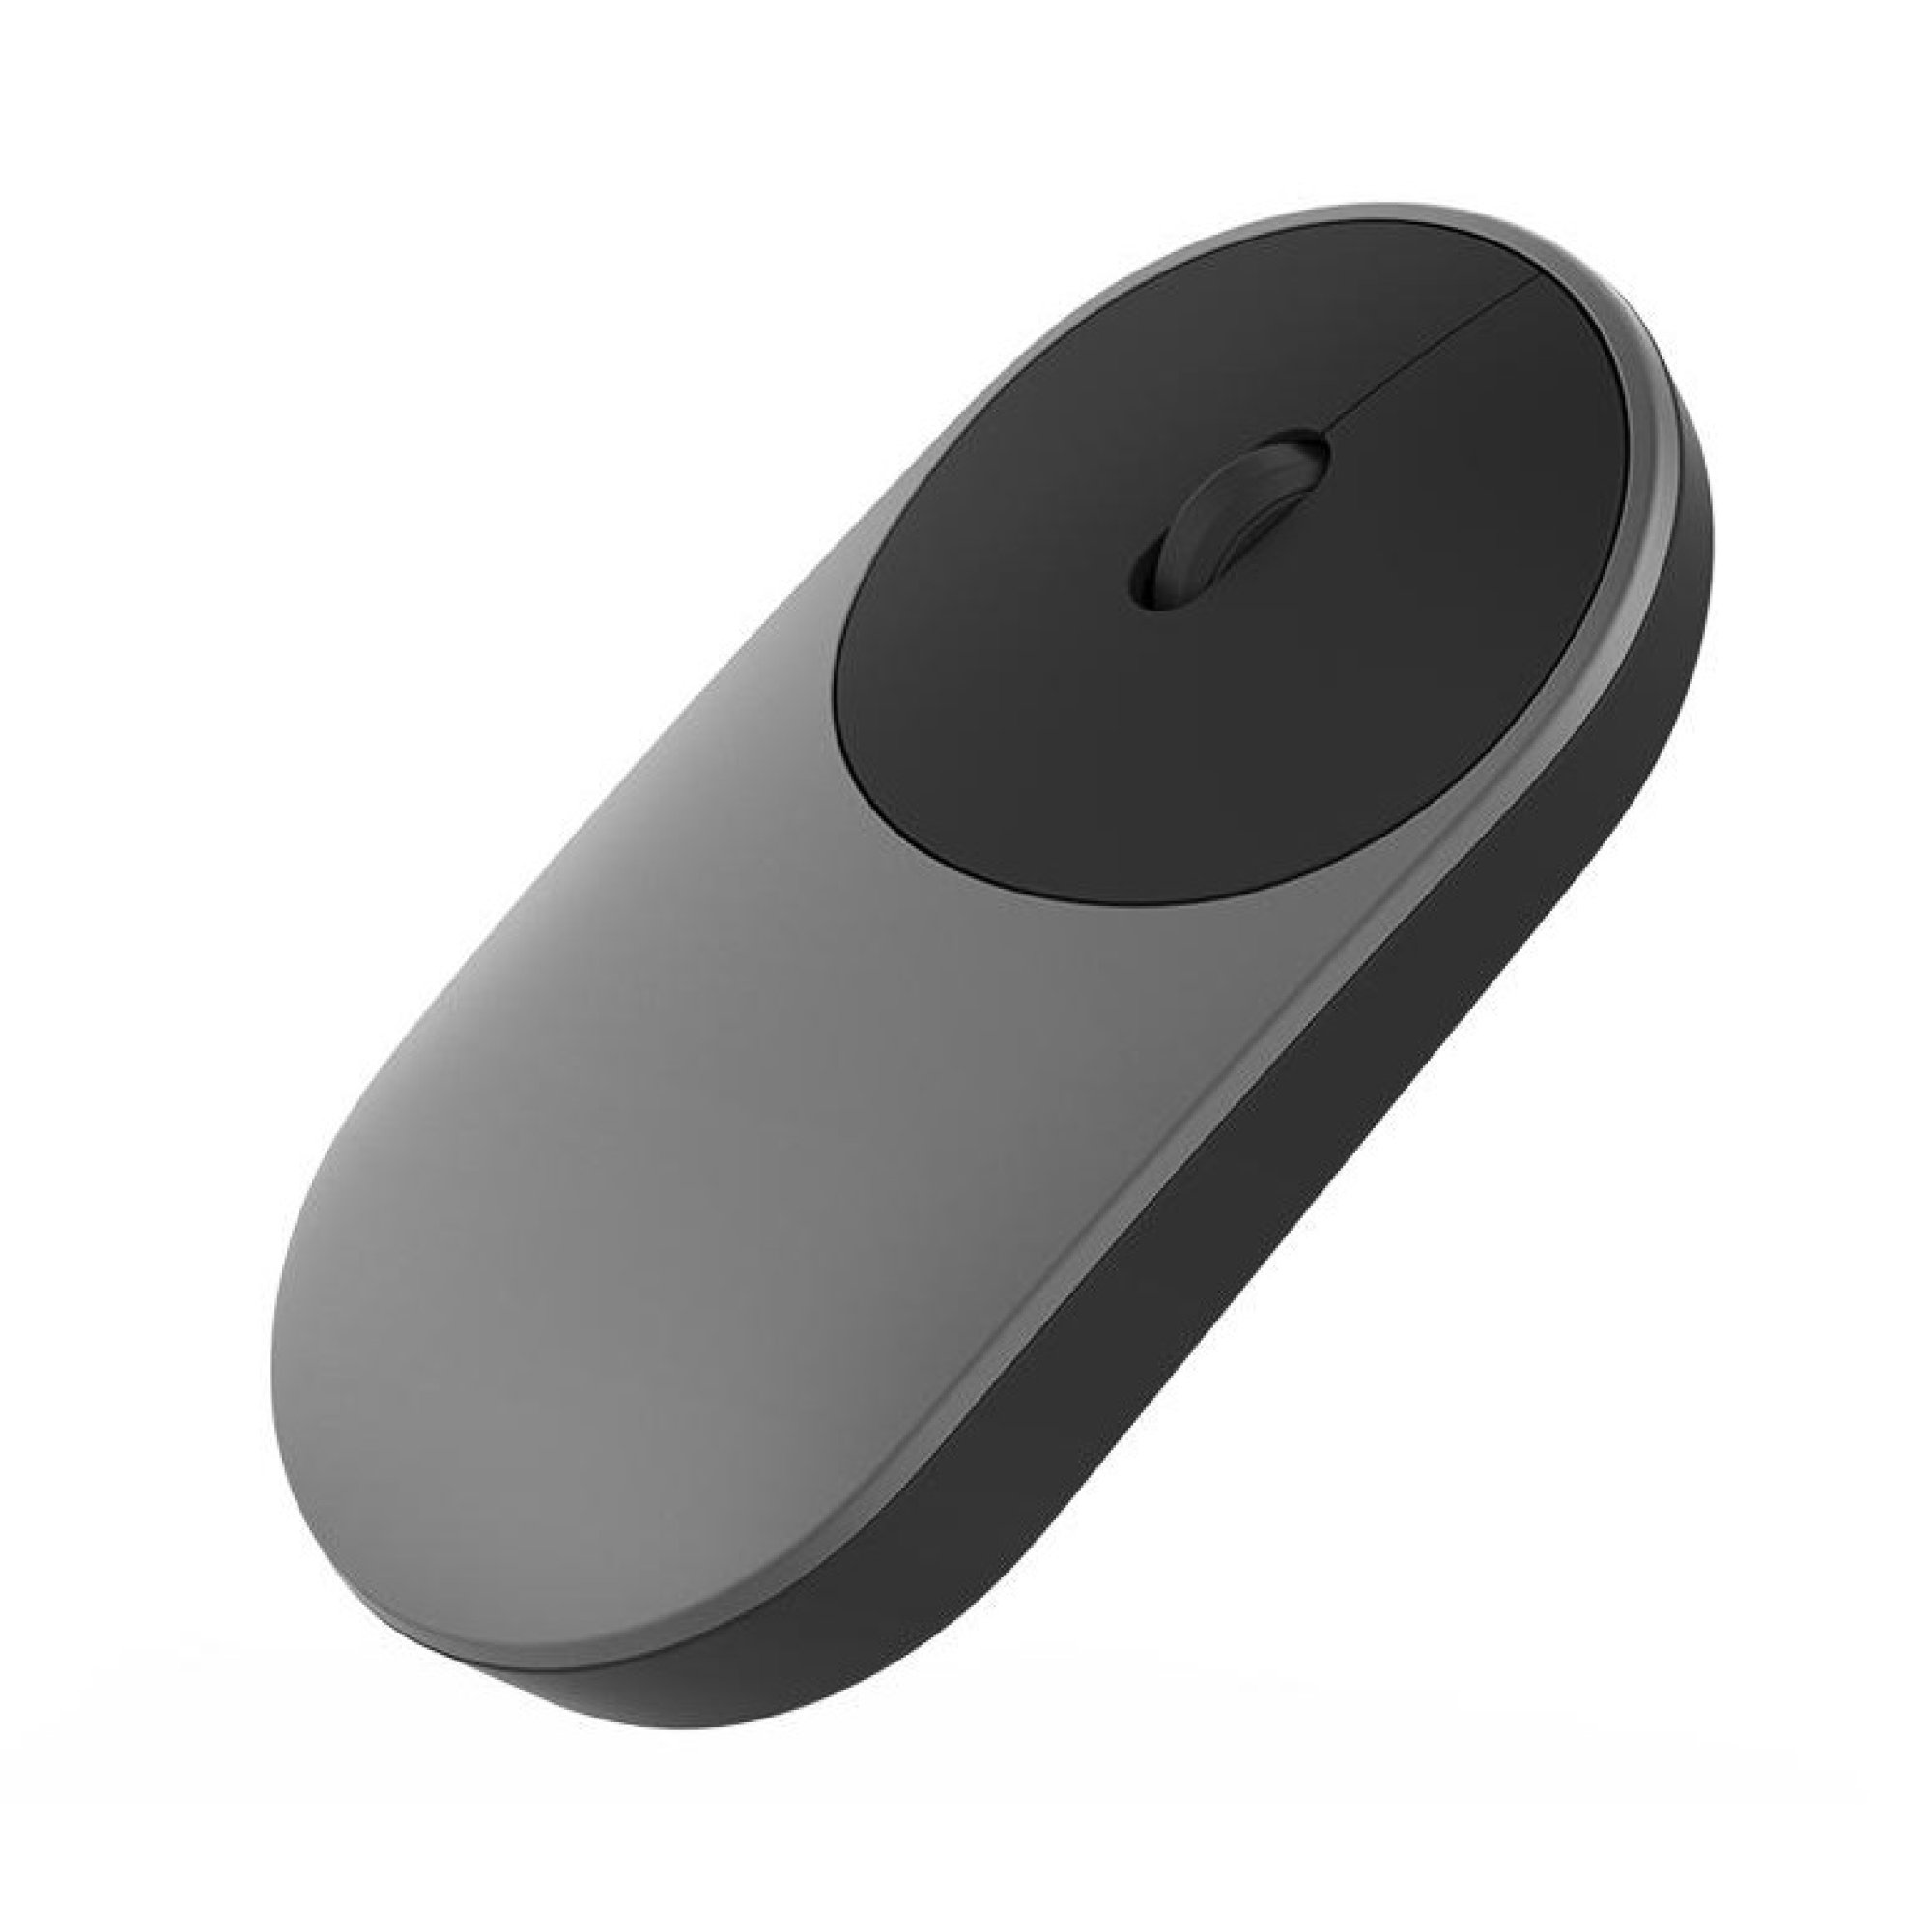 Mouse Portable XIAOMI 2 En 1 Bluetooth 4.0 + Wireless 2.4 Ghz NEGRO